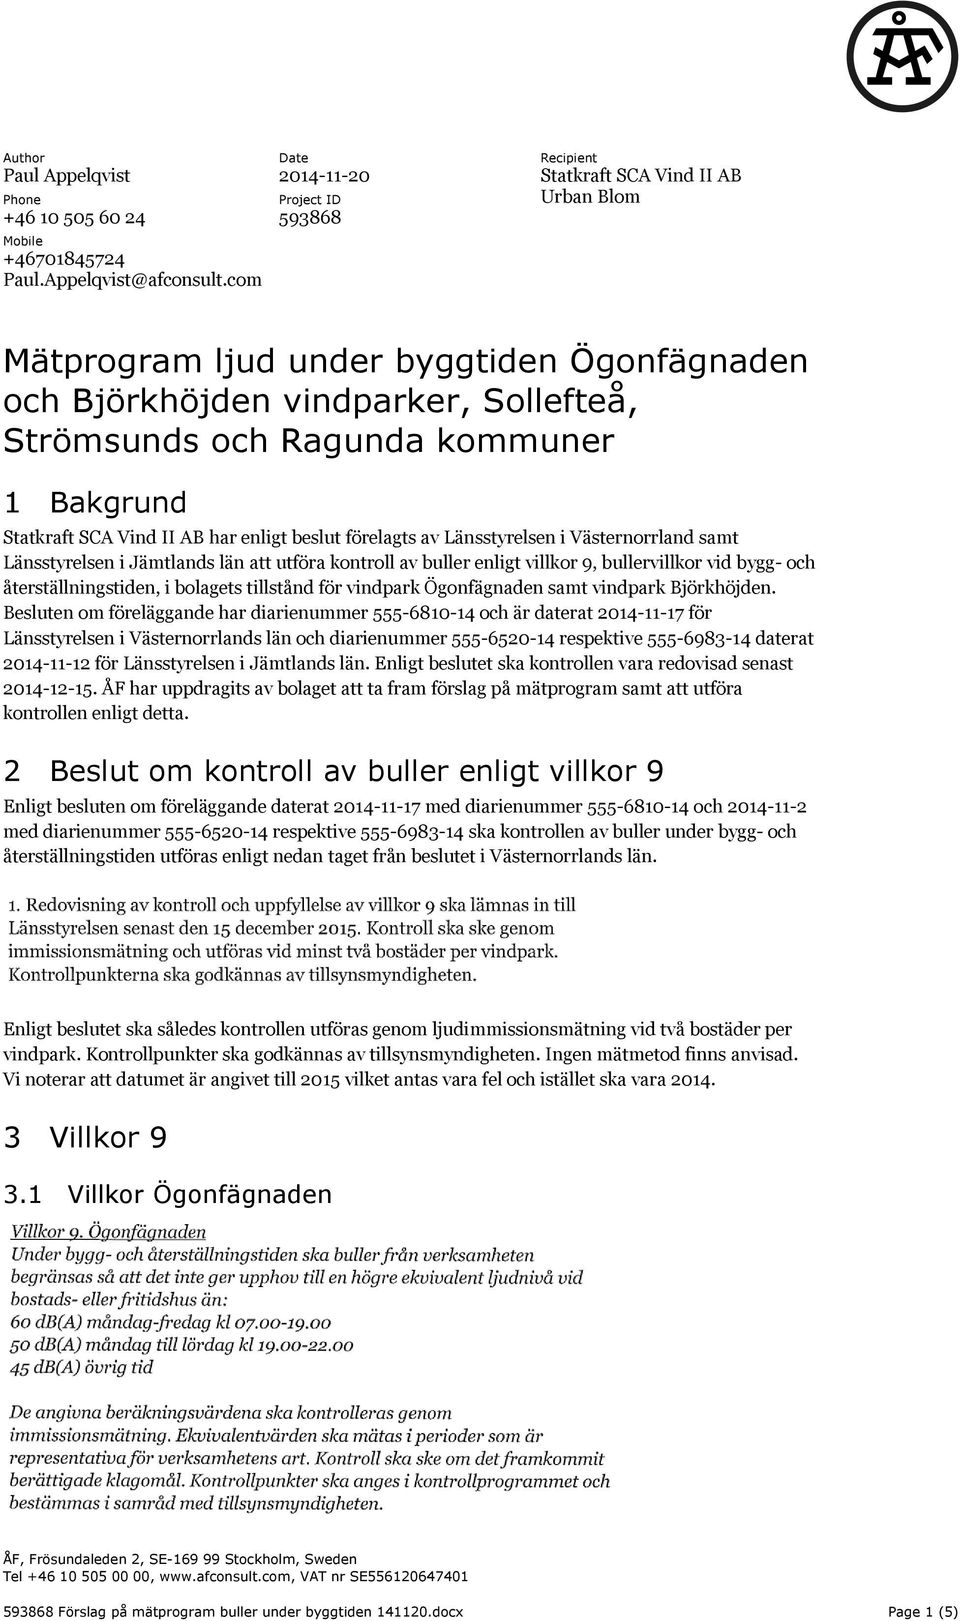 1 Bakgrund Statkraft SCA Vind II AB har enligt beslut förelagts av Länsstyrelsen i Västernorrland samt Länsstyrelsen i Jämtlands län att utföra kontroll av buller enligt villkor 9, bullervillkor vid